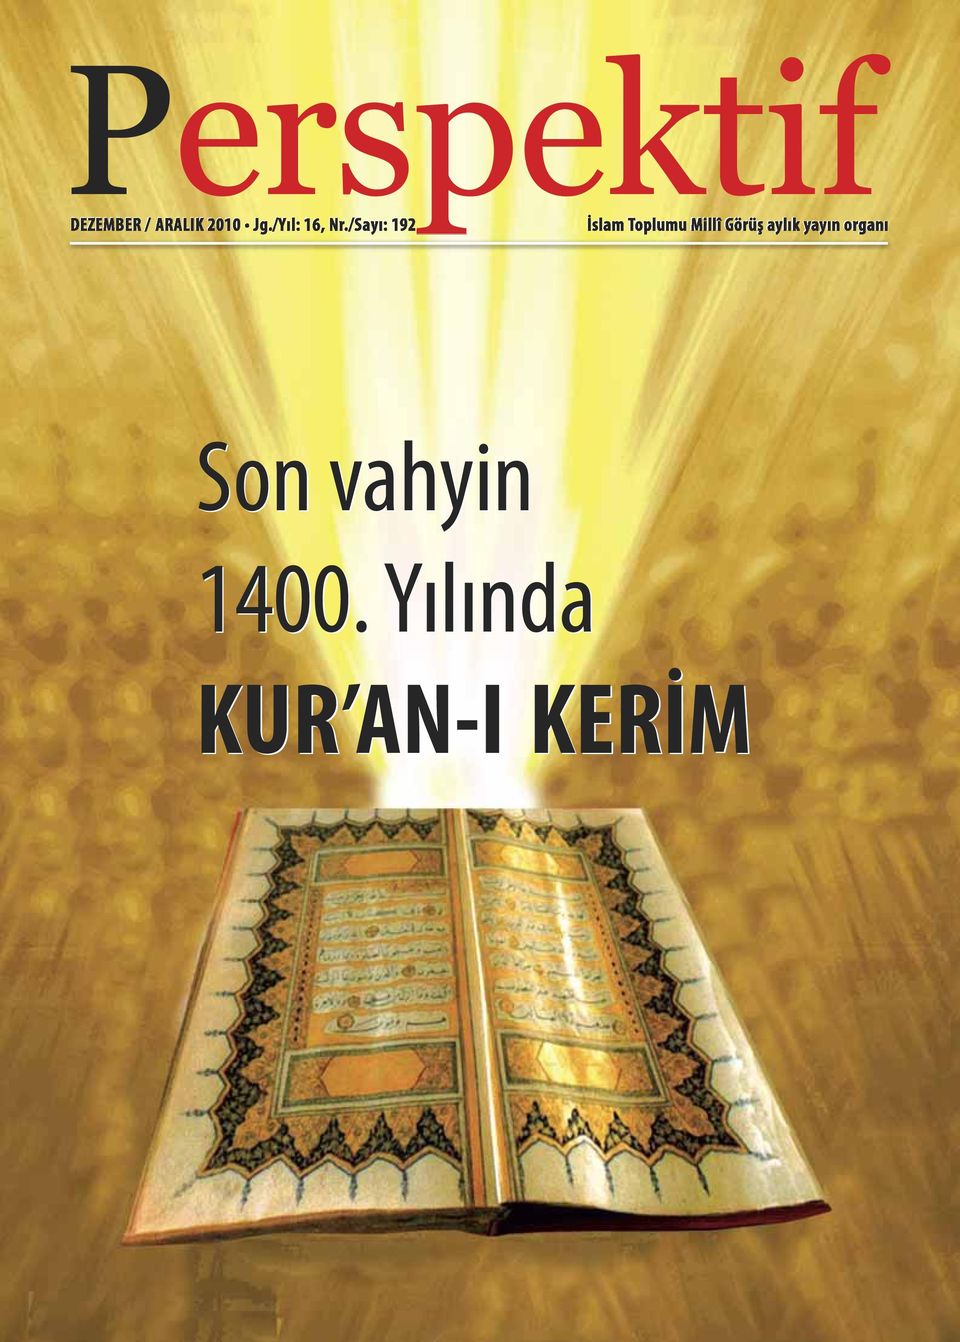 /Sa yı: 192 İslam Toplumu Millî